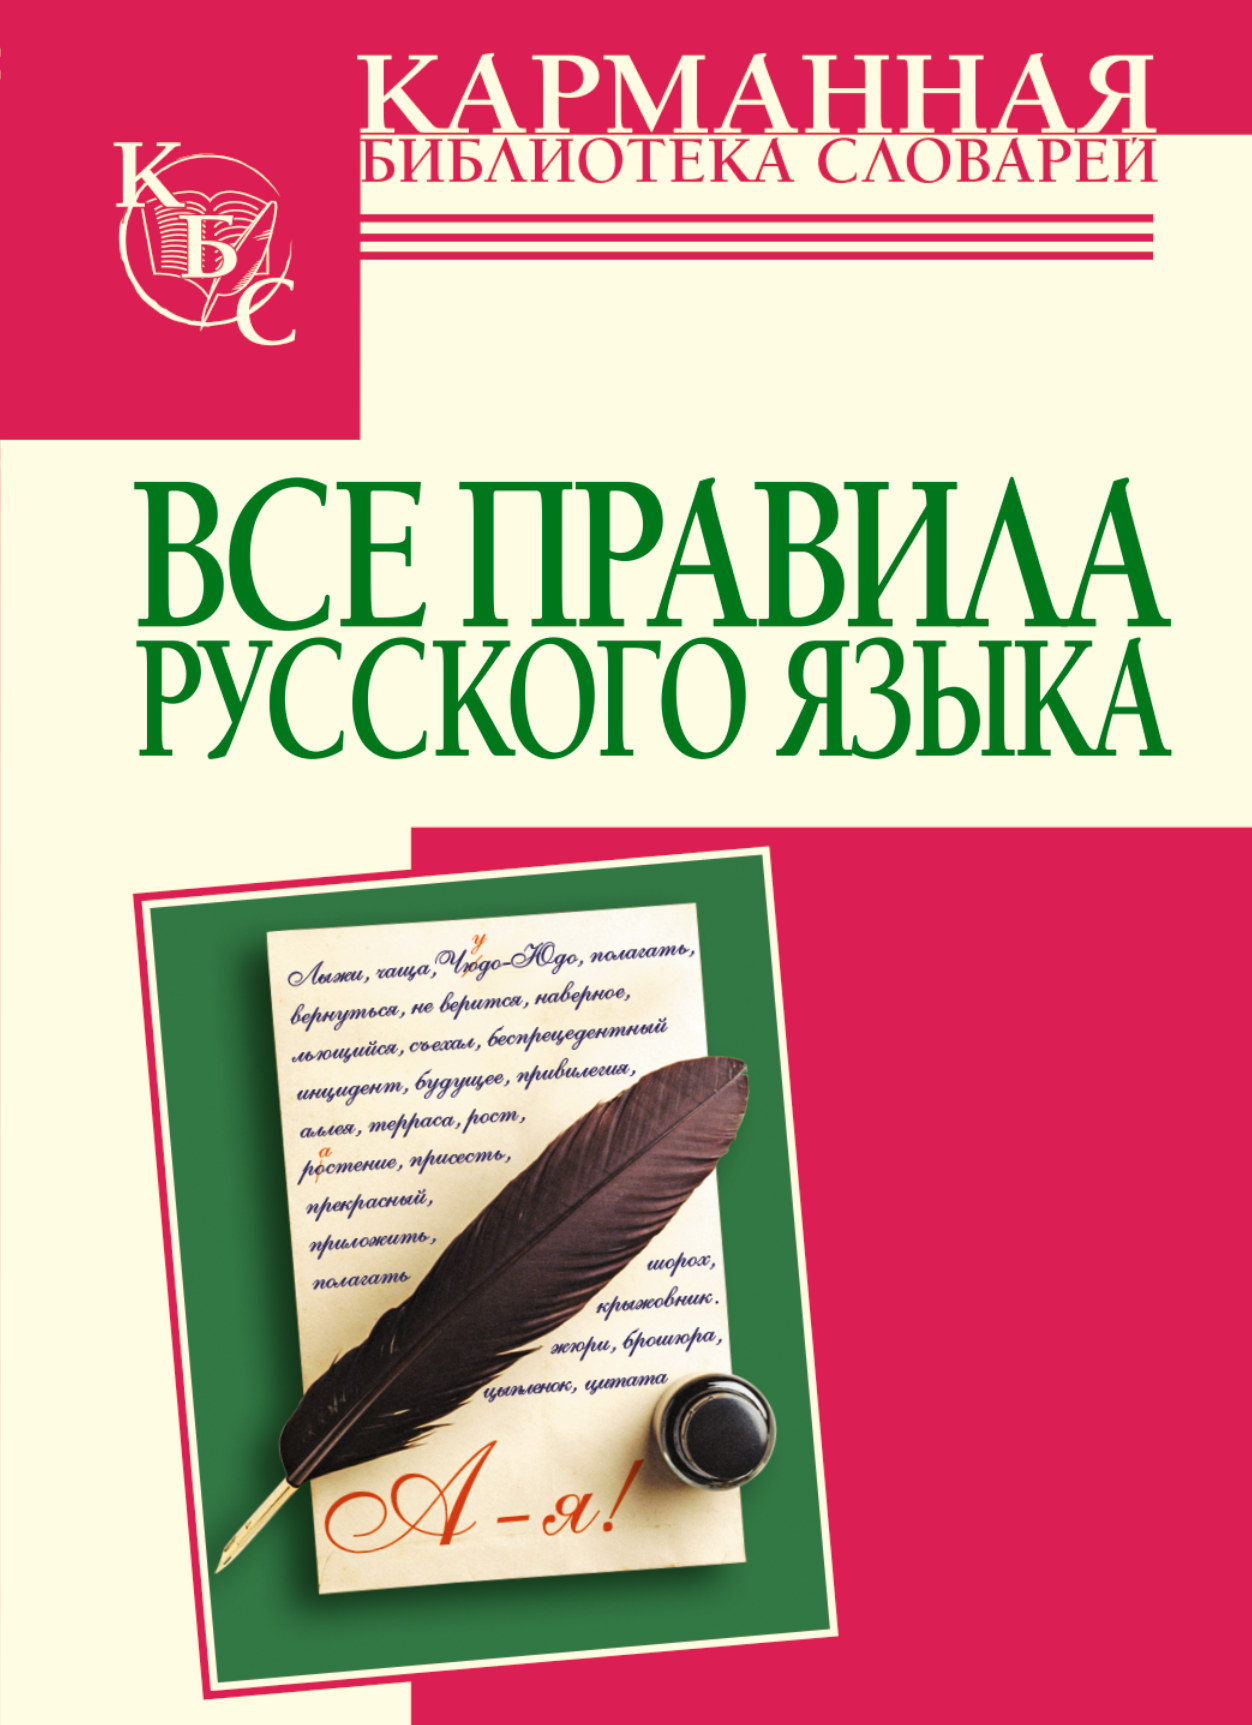 Русский язык книга